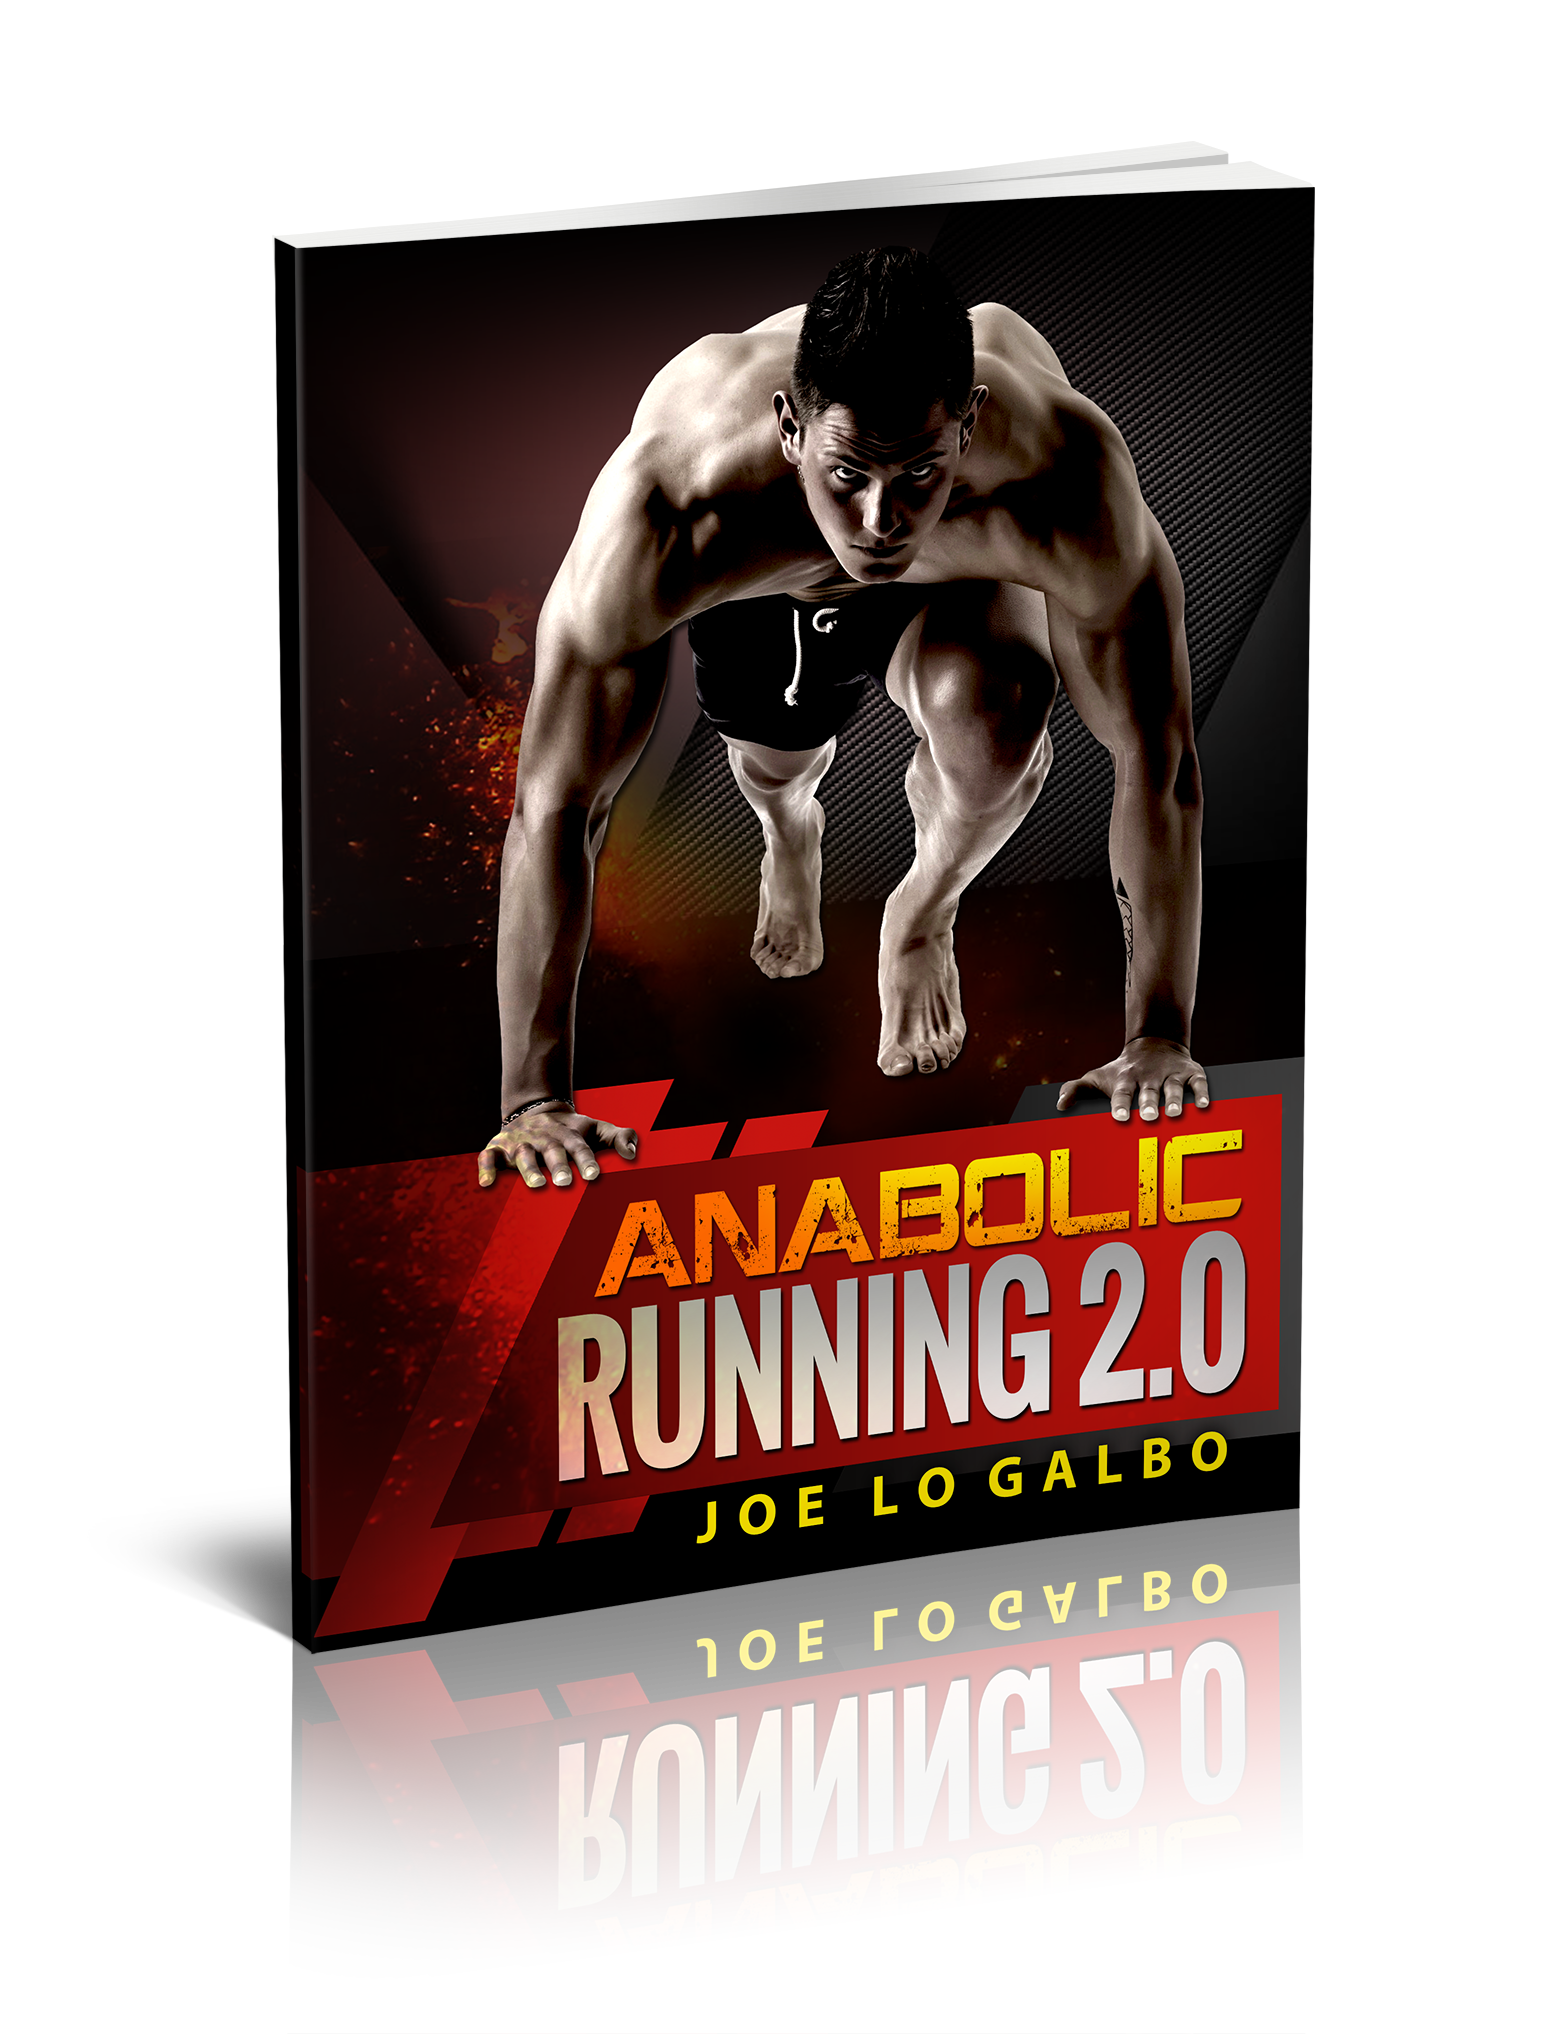 Anabolic Running